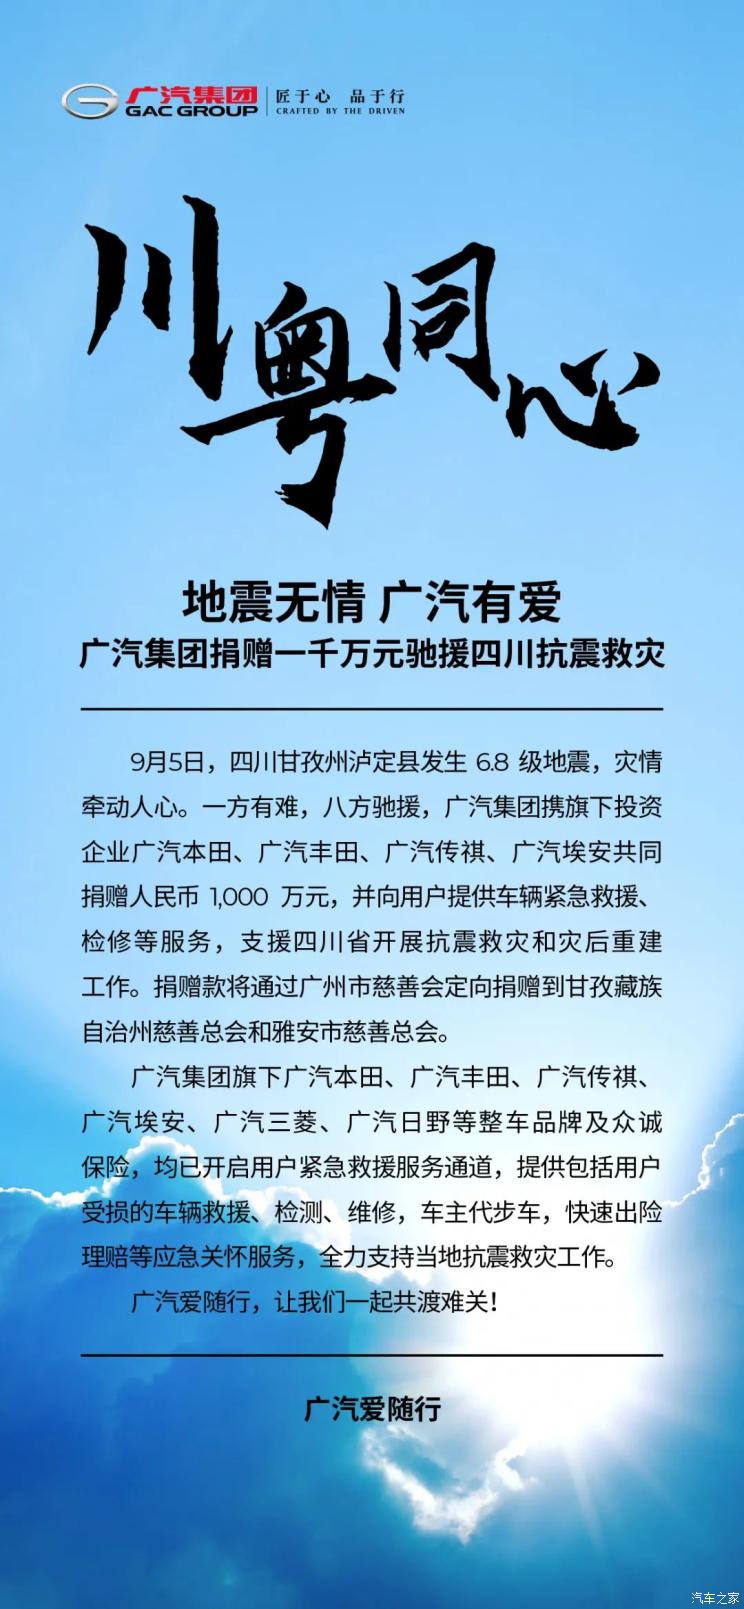 广汽集团捐赠一千万元驰援四川抗震救灾